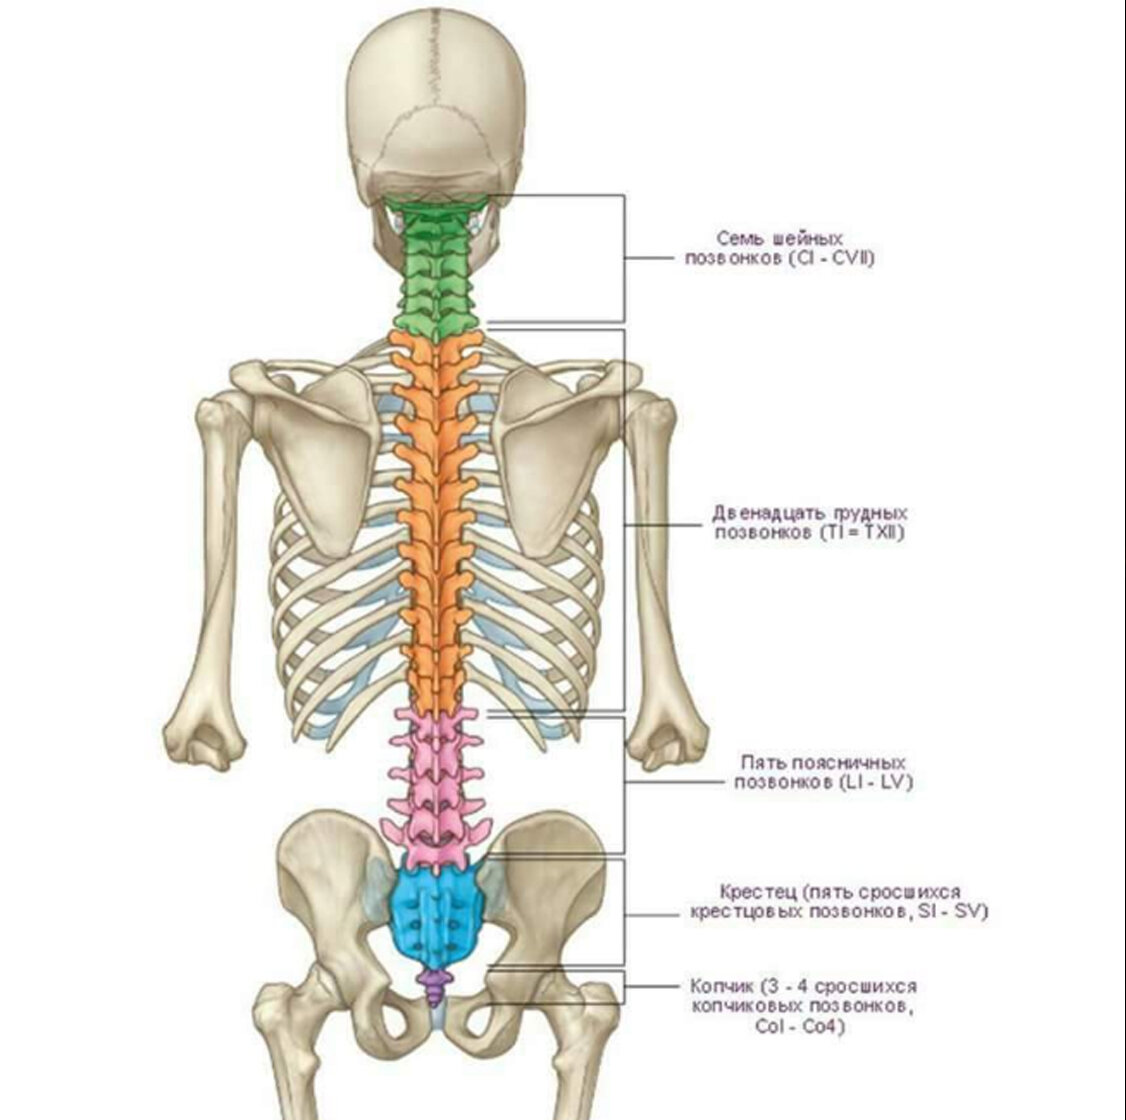 Кости позвоночника бедро и печень. Анатомия человека кости скелета позвоночника. Анатомия костей поясничного отдела позвоночника. Отделы позвоночника человека на скелете человека.